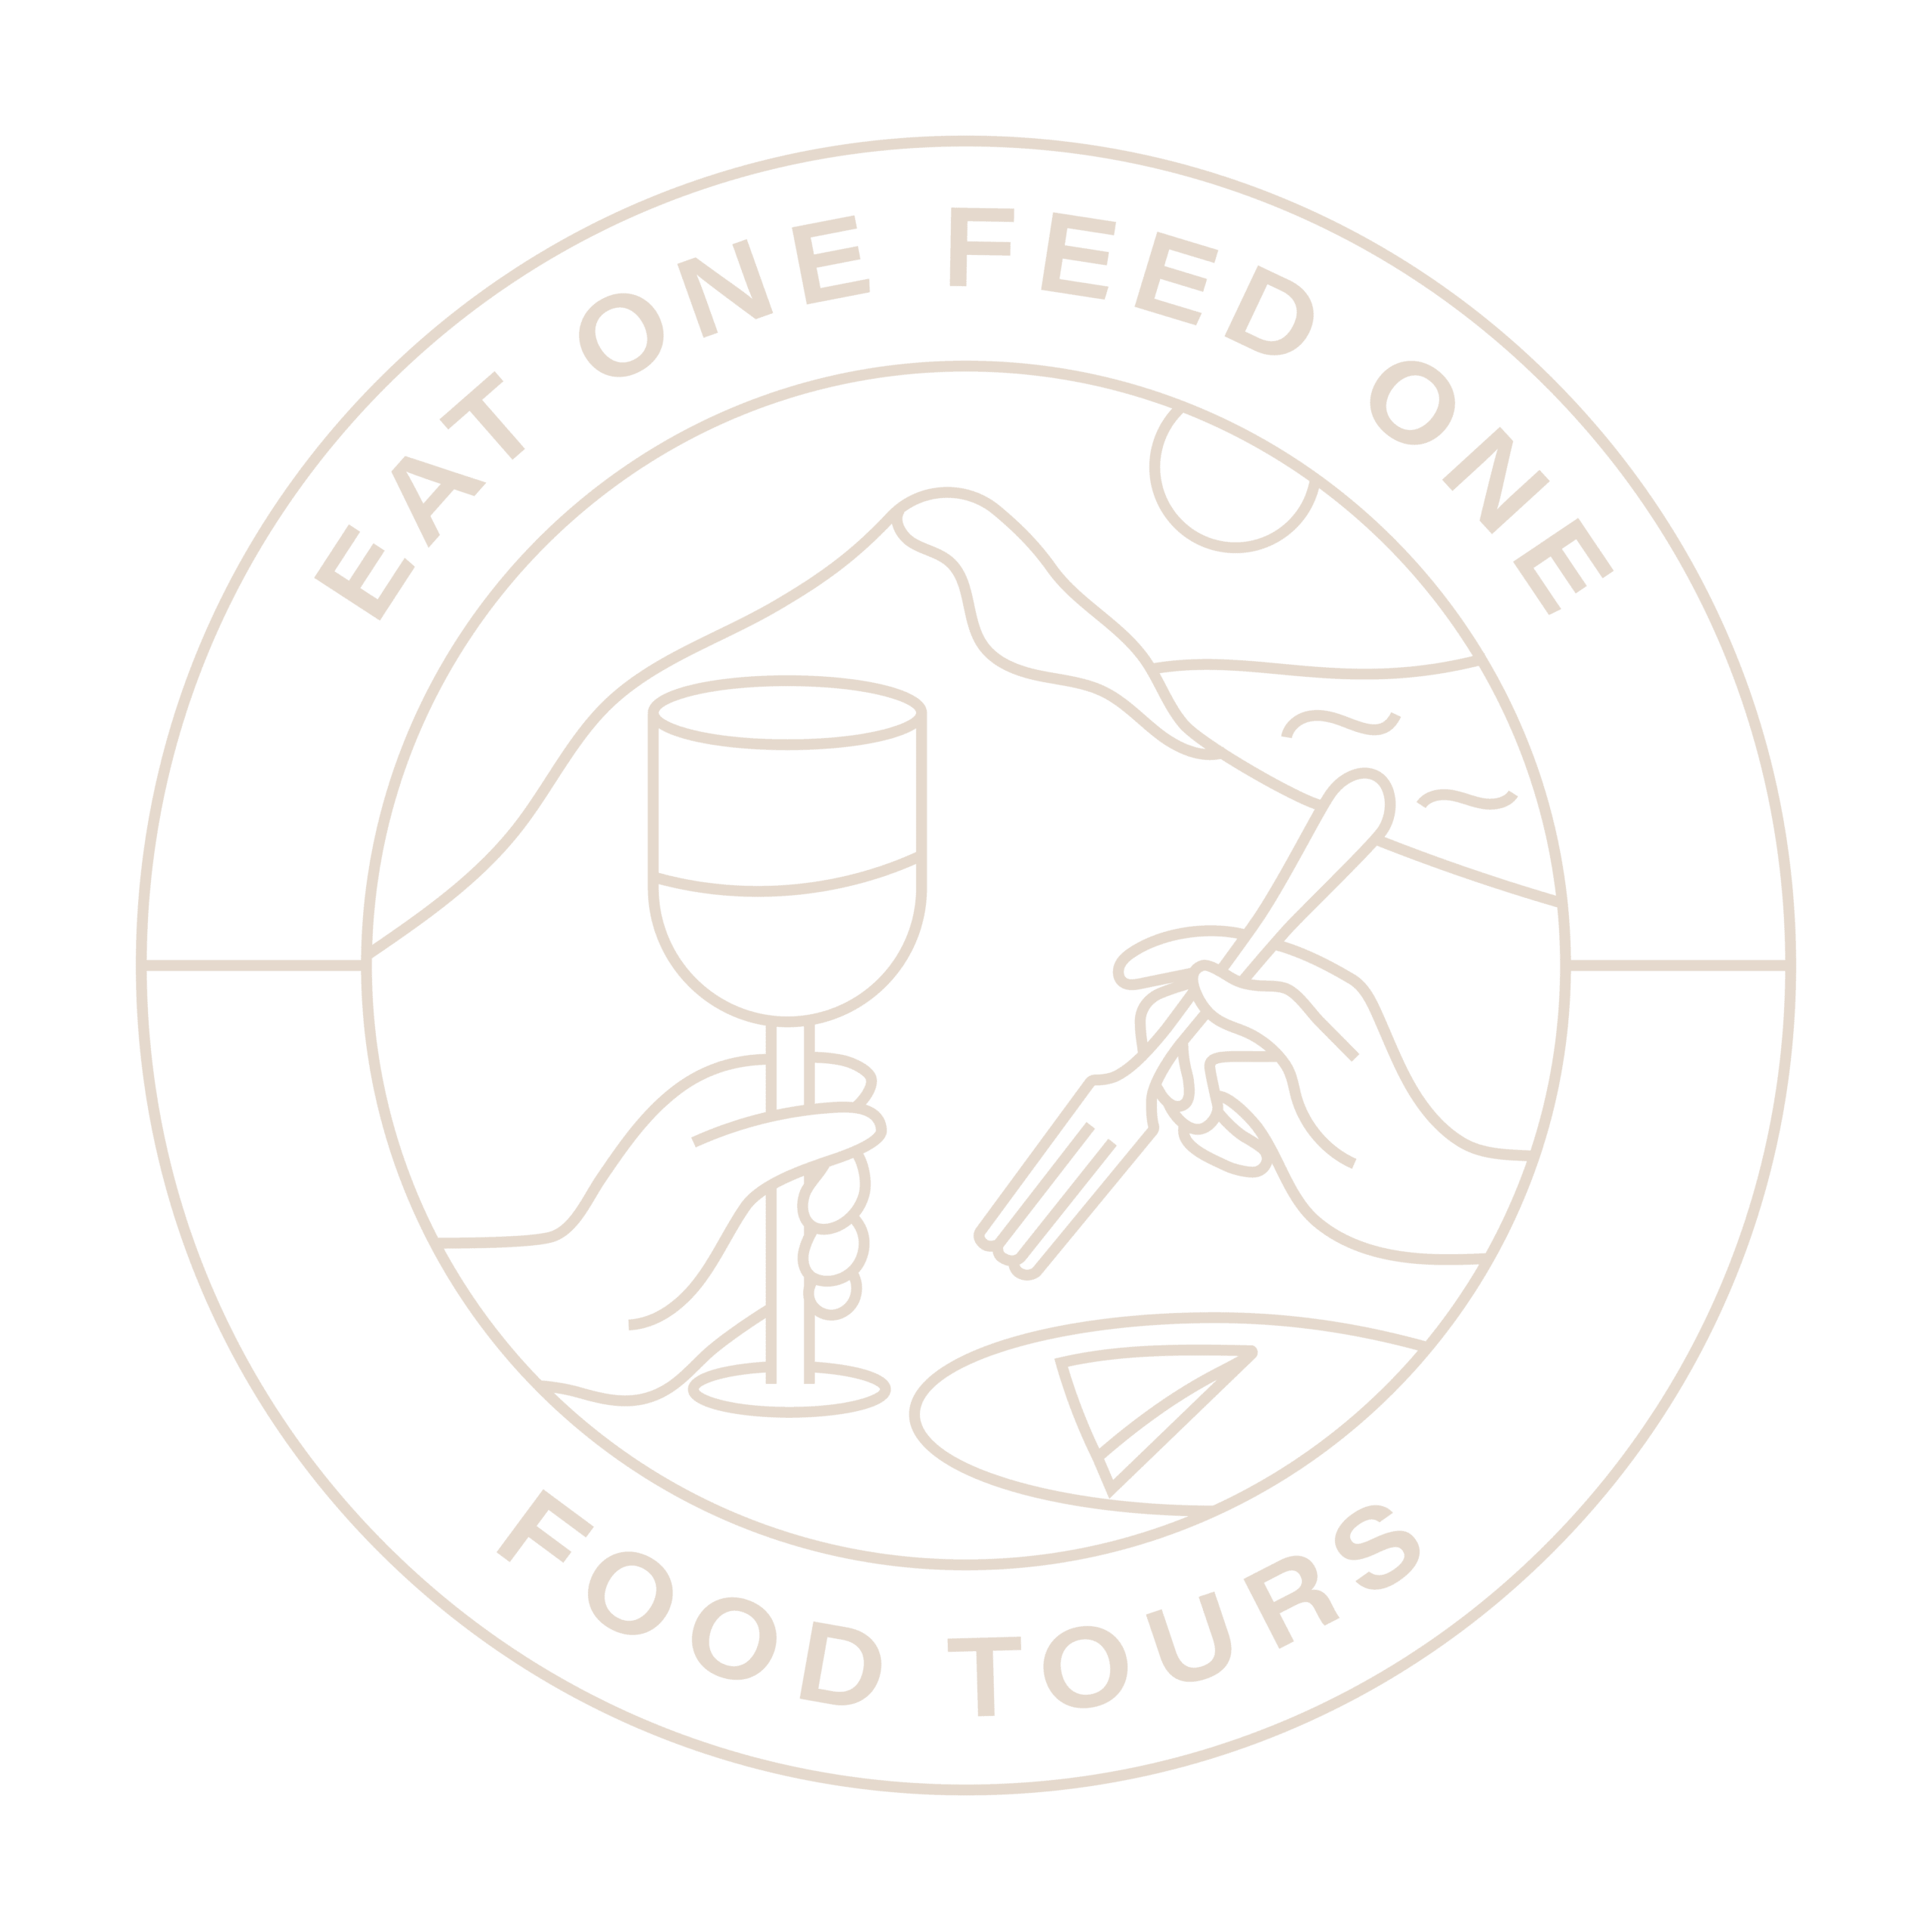 EatOneFeedOne-food tours